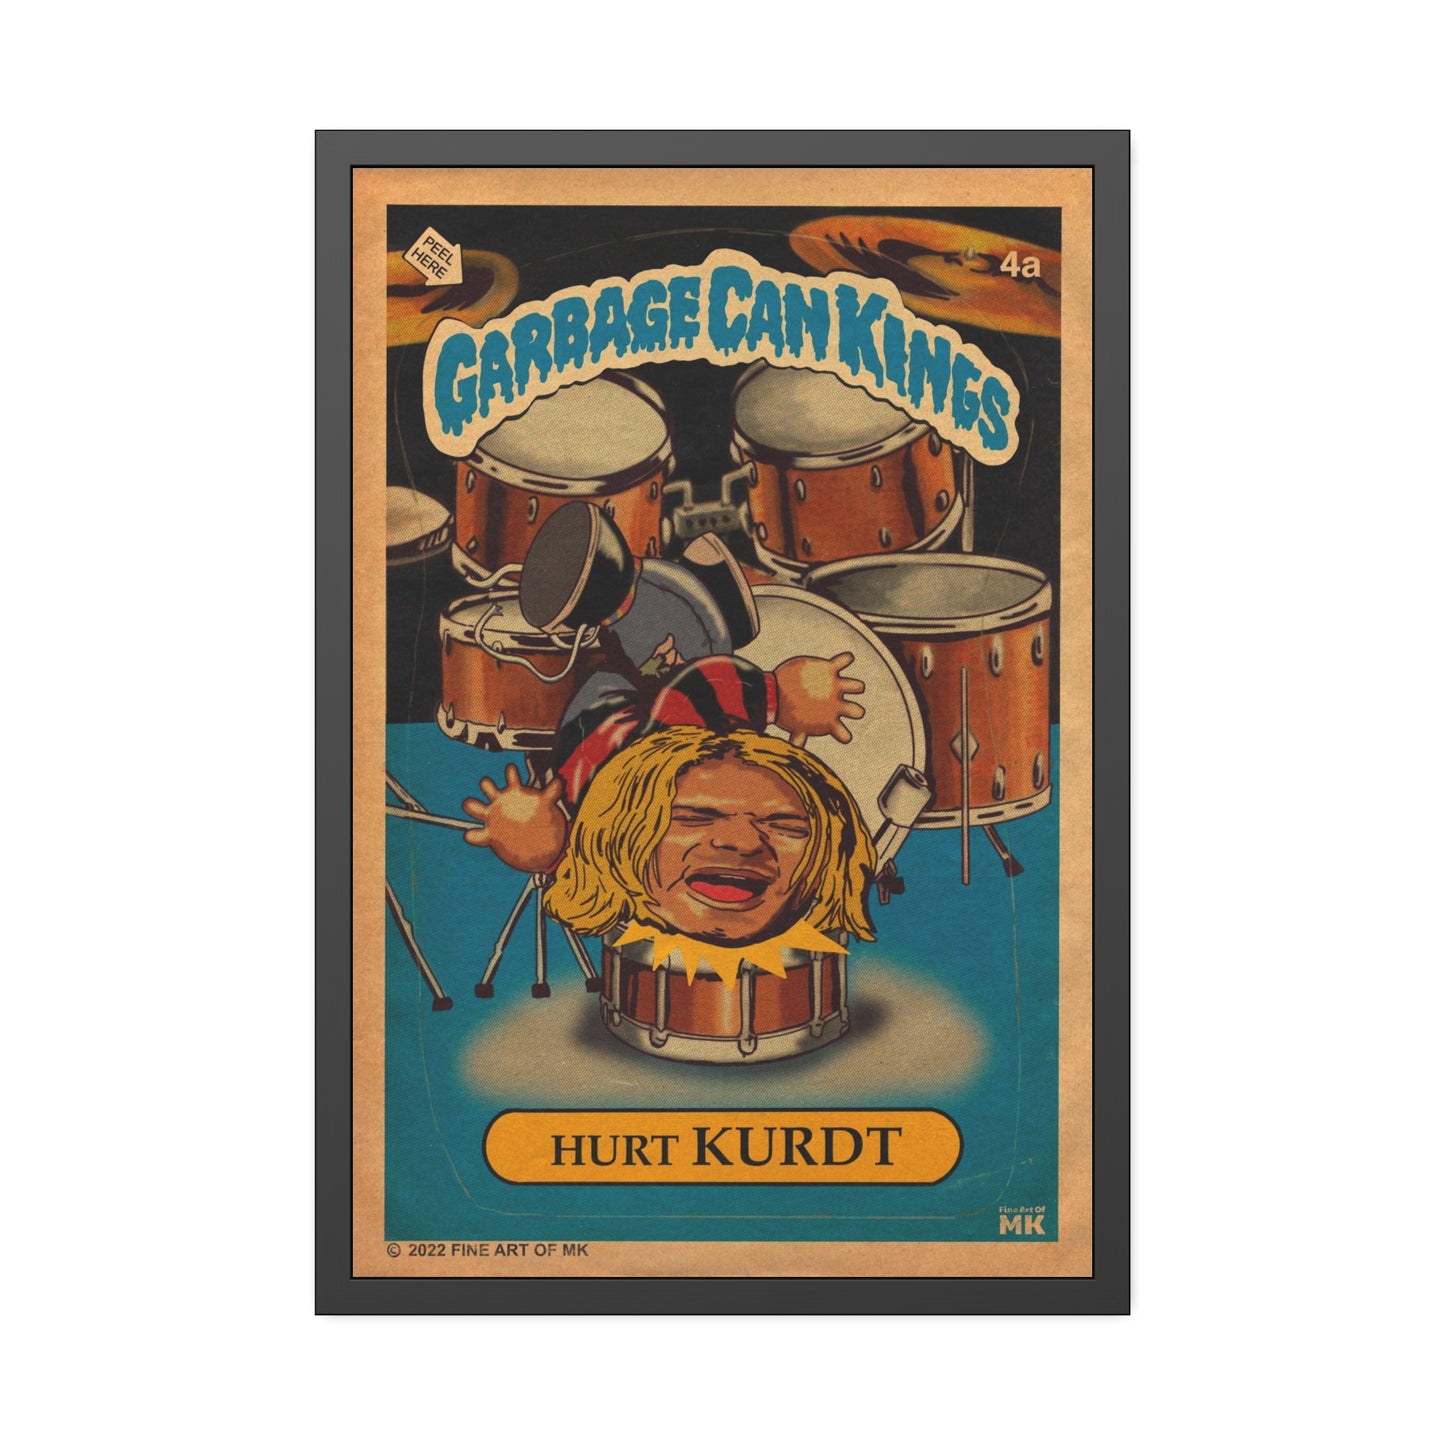 Hurt KURDT- Garbage Can Kings - Nirvana - Framed Paper Posters